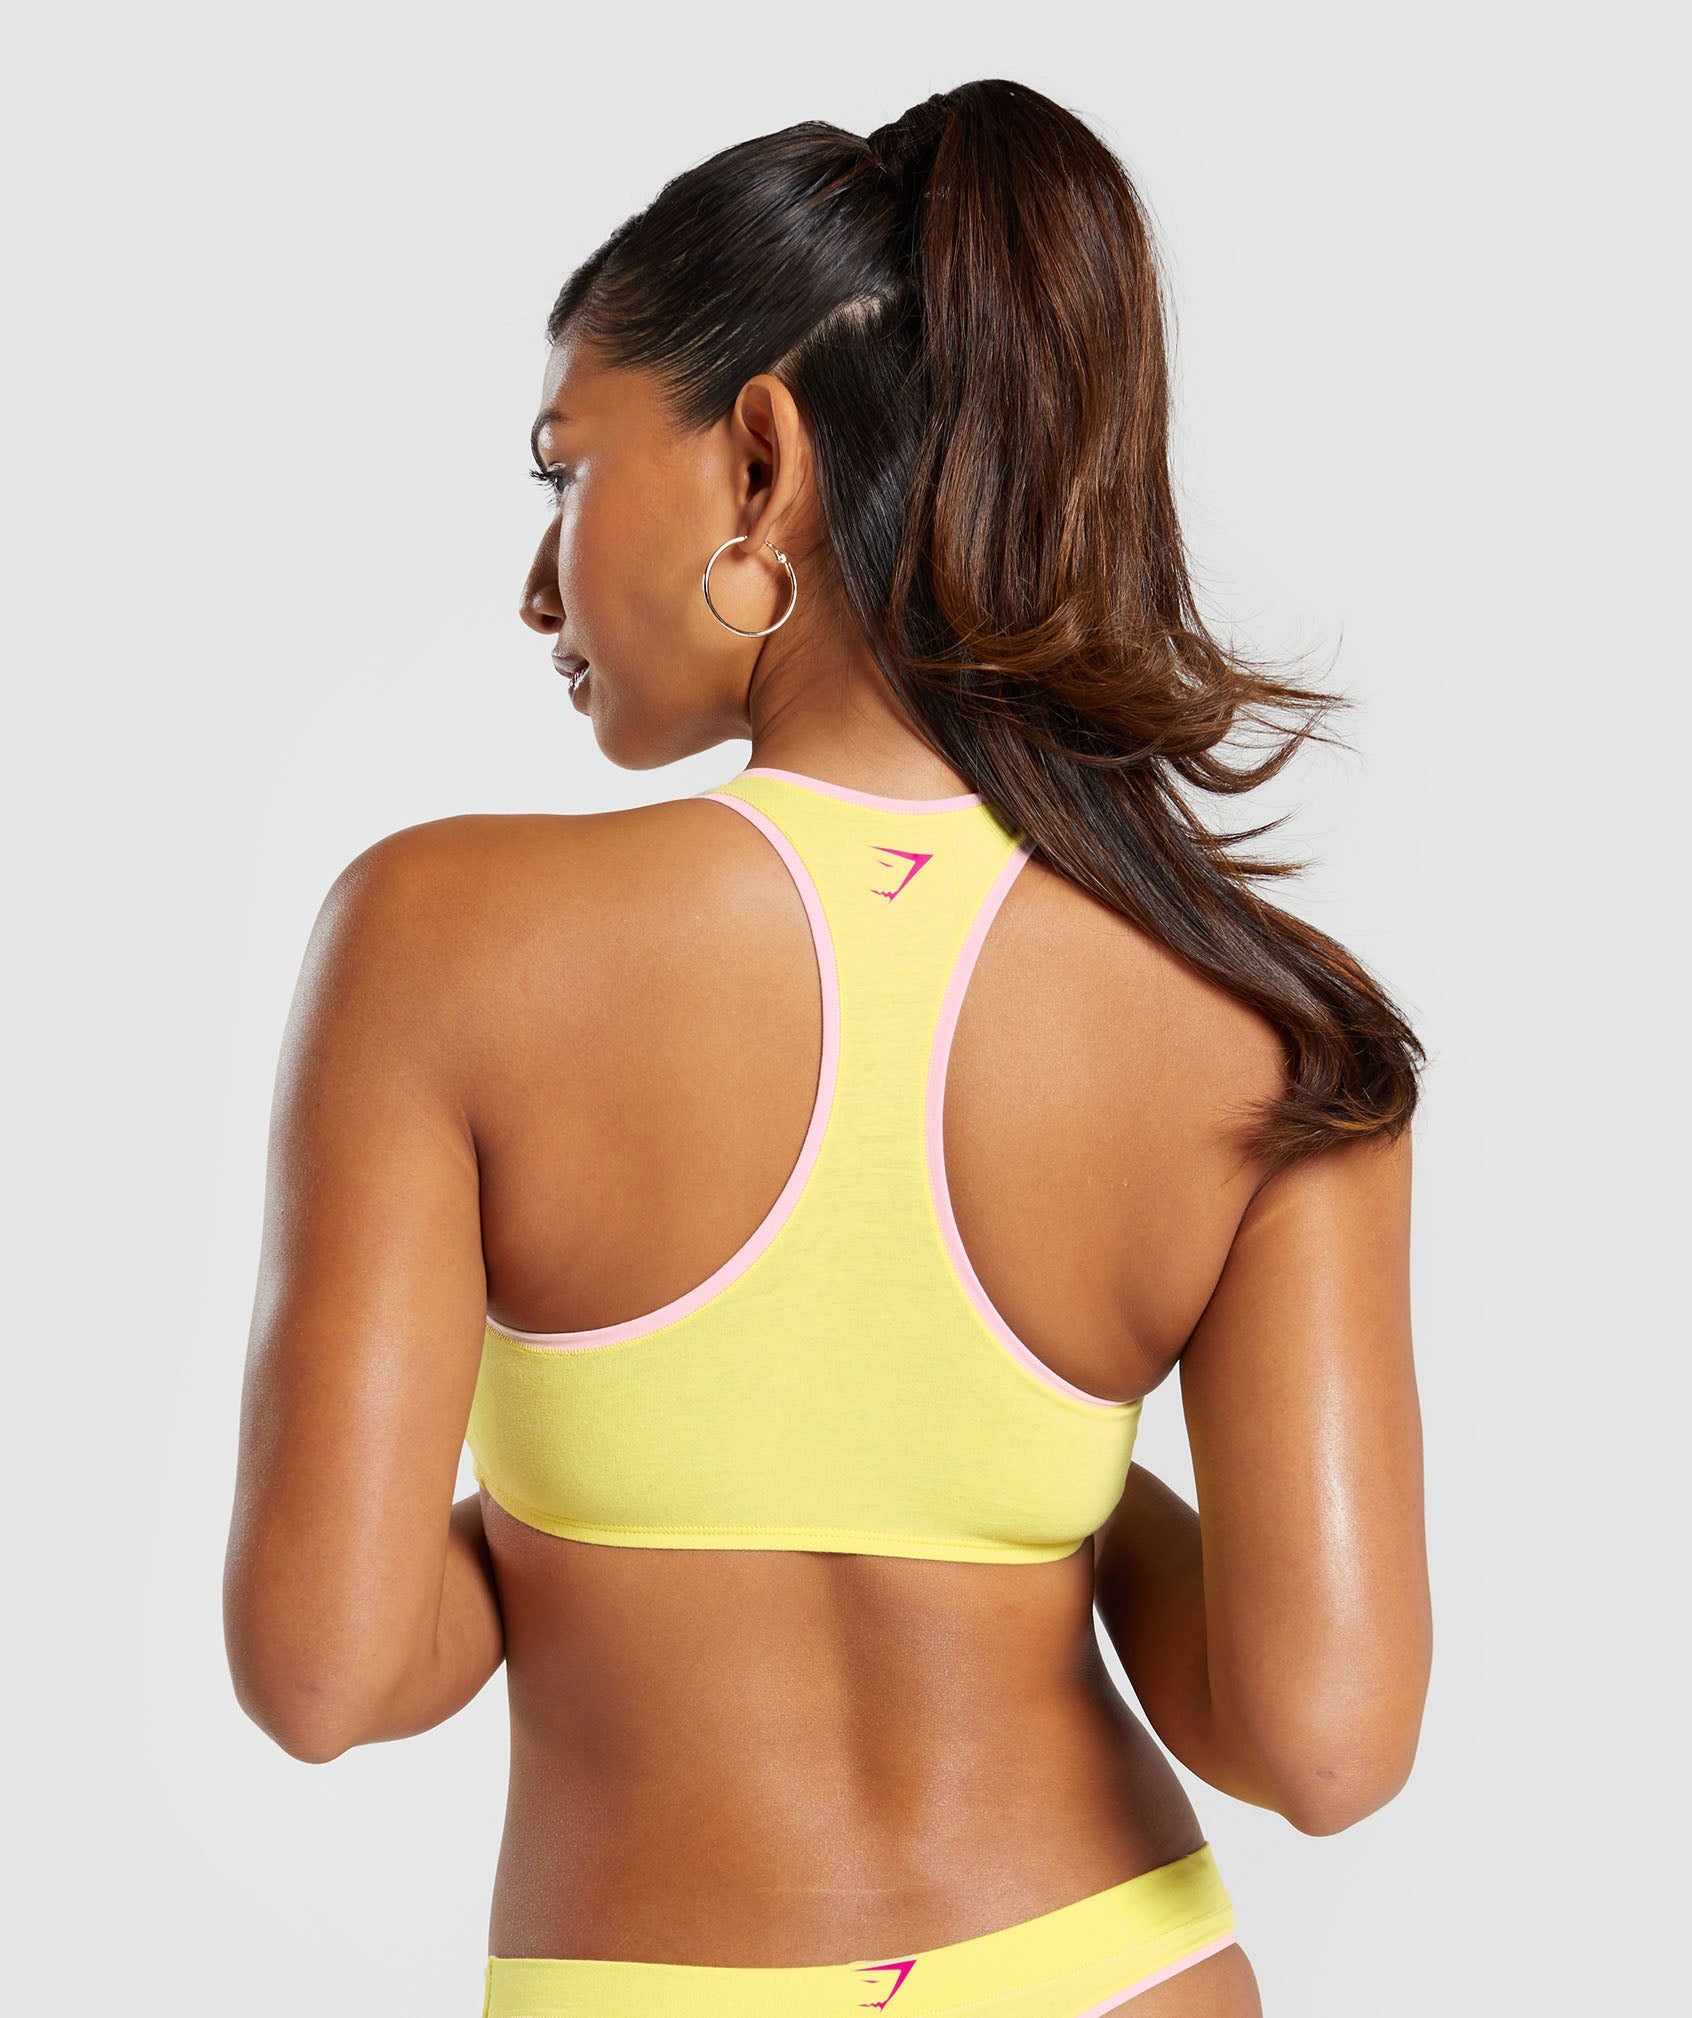 Women's Gym & Workout Underwear – Seamless & Cotton